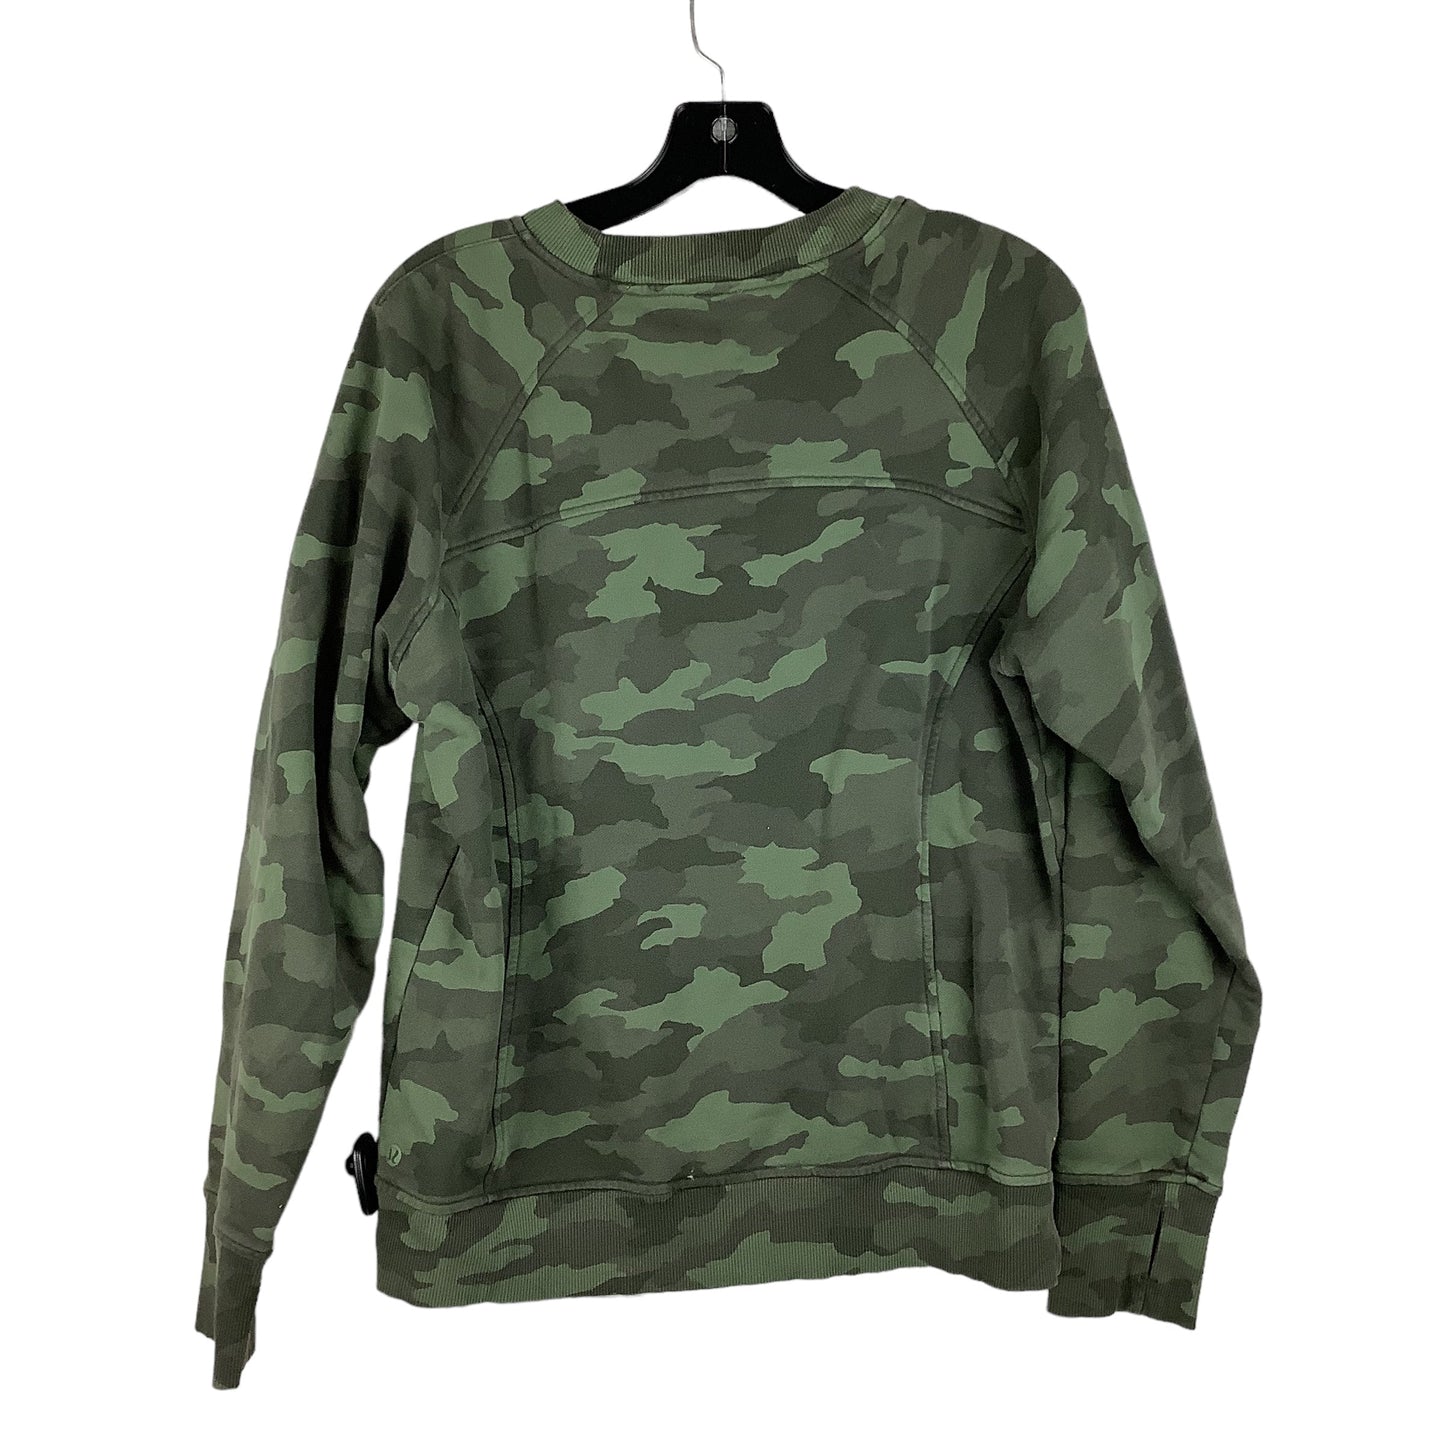 Camouflage Print Athletic Sweatshirt Crewneck Lululemon, Size 12